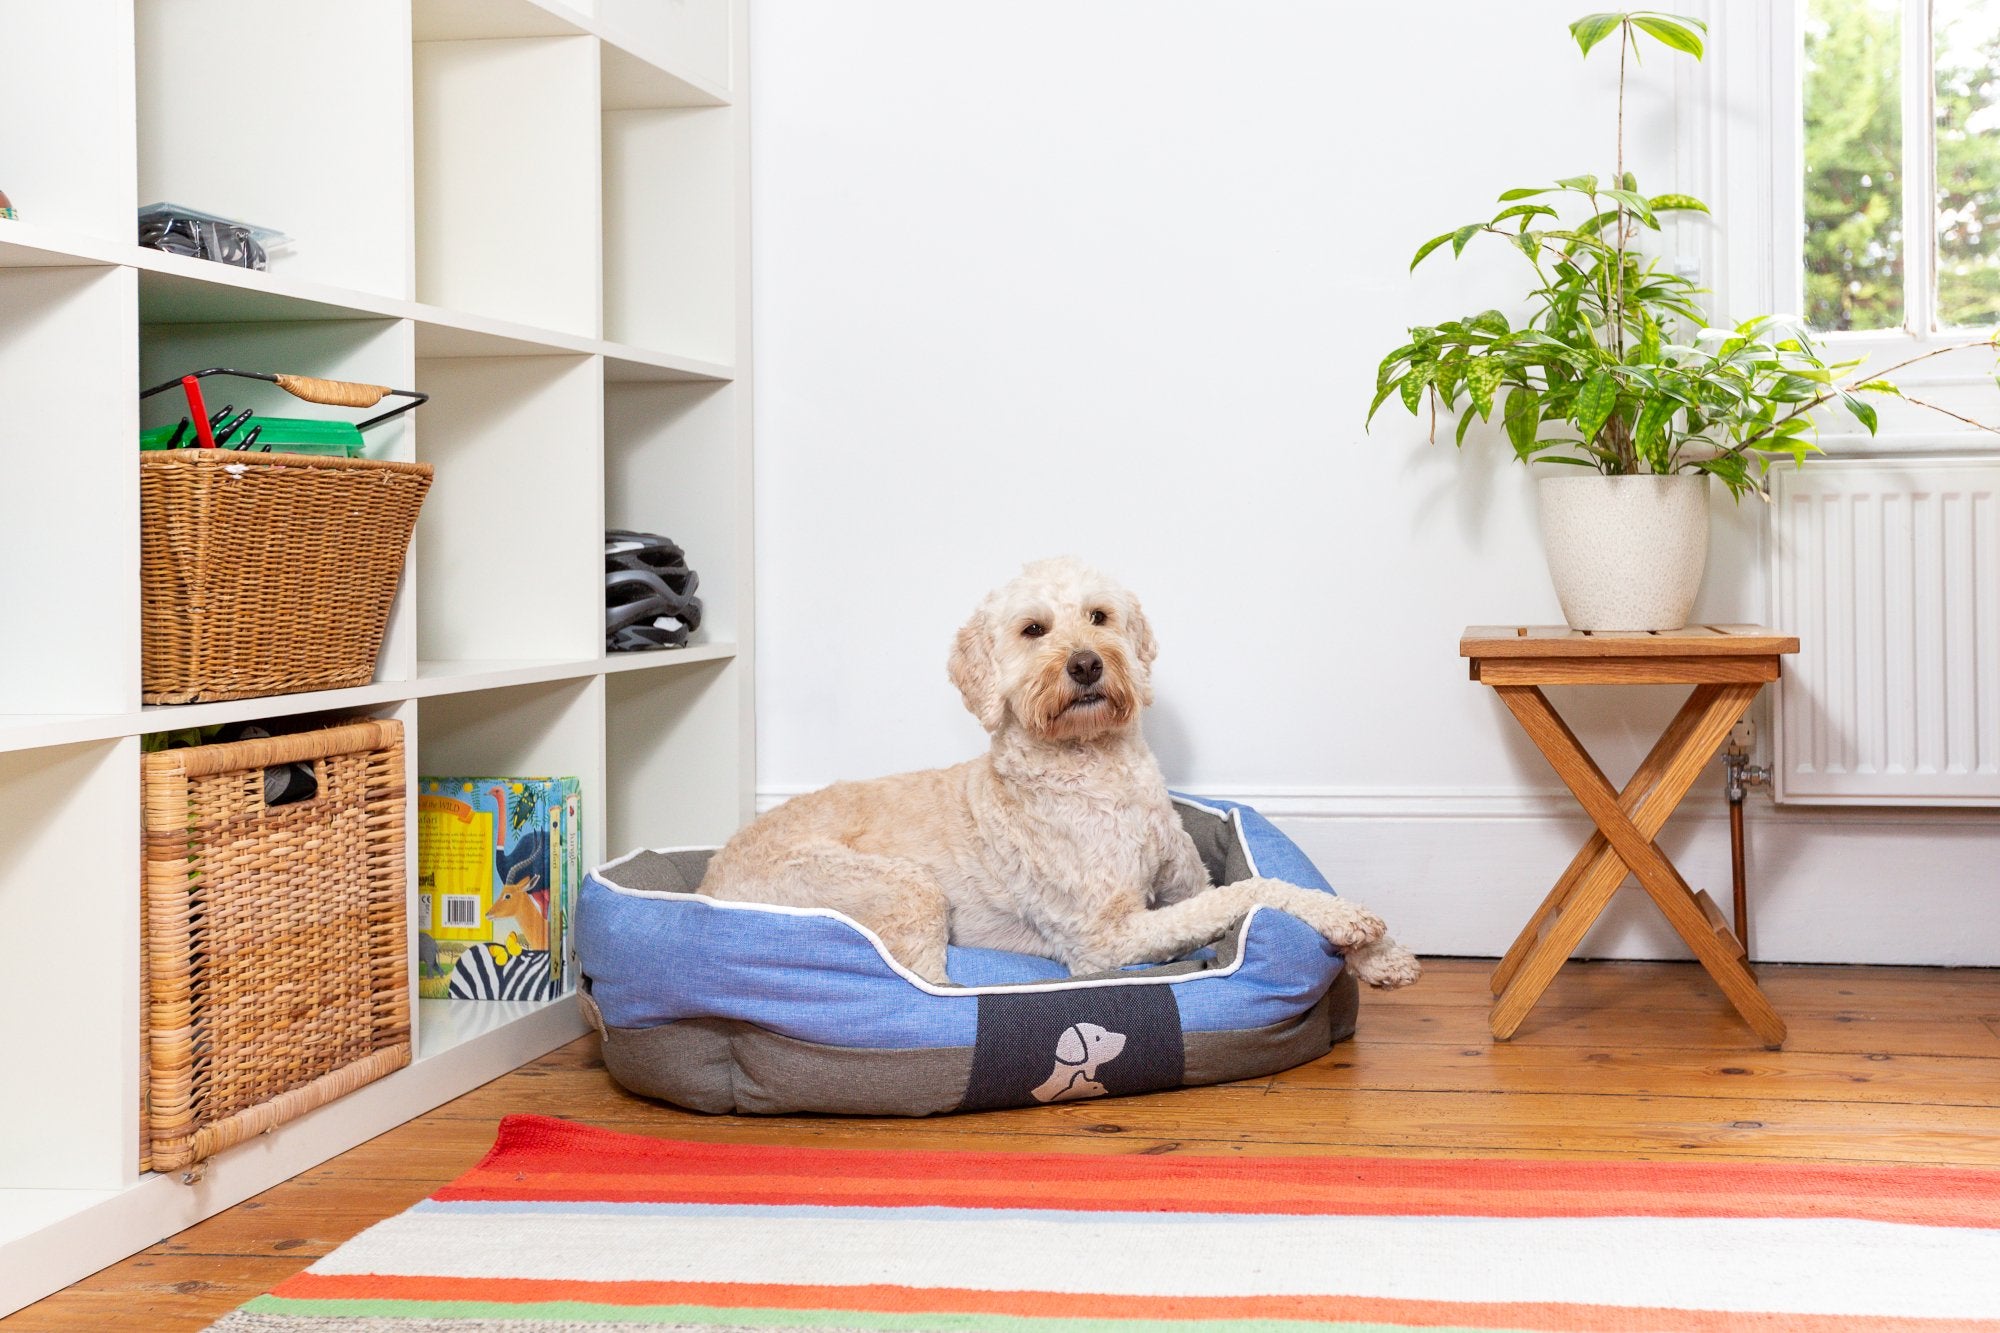 Real Pet Store Oxbridge Luxury Dog Beds Blue 4 Sizes